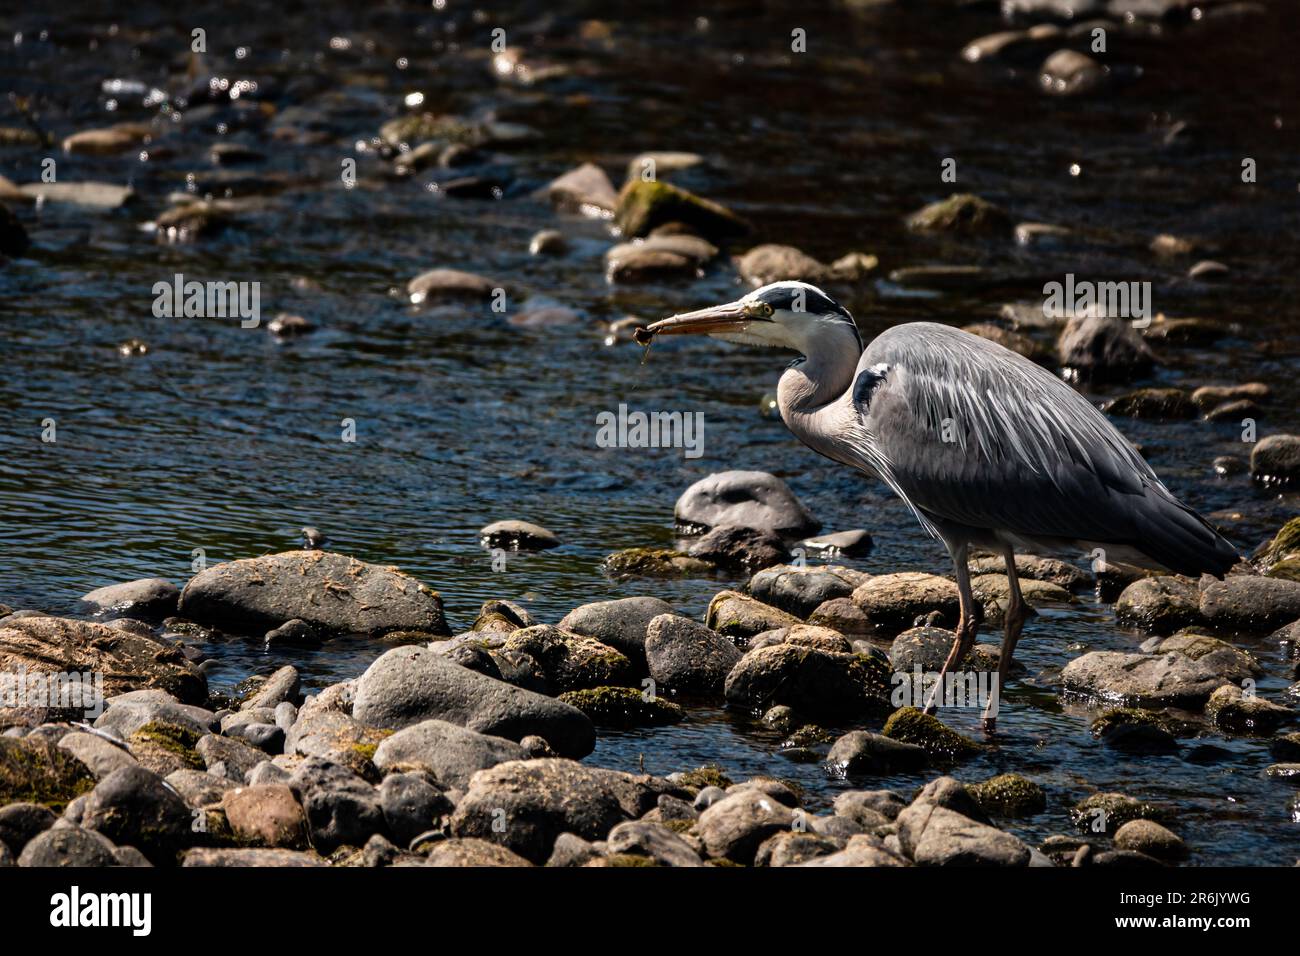 Ein grauer Reiher, der einen Fisch am Fluss Eamont bei Penrith Cumbria isst Stockfoto